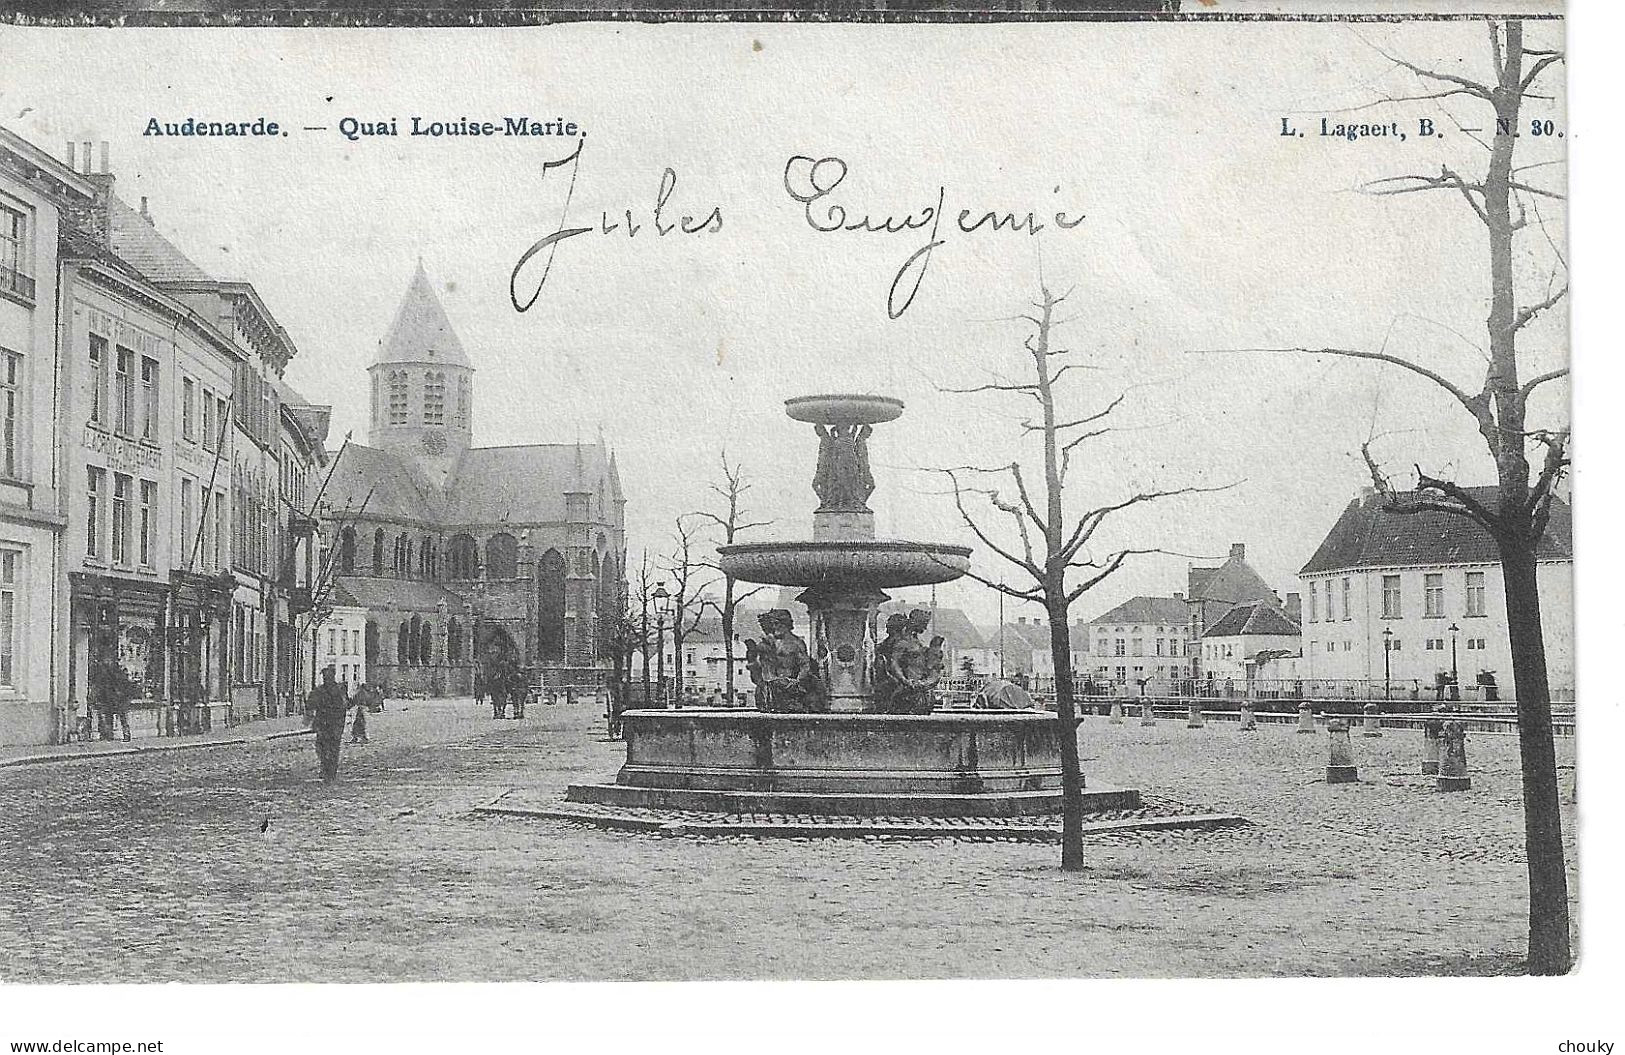 Audenarde (1908) - Oudenaarde